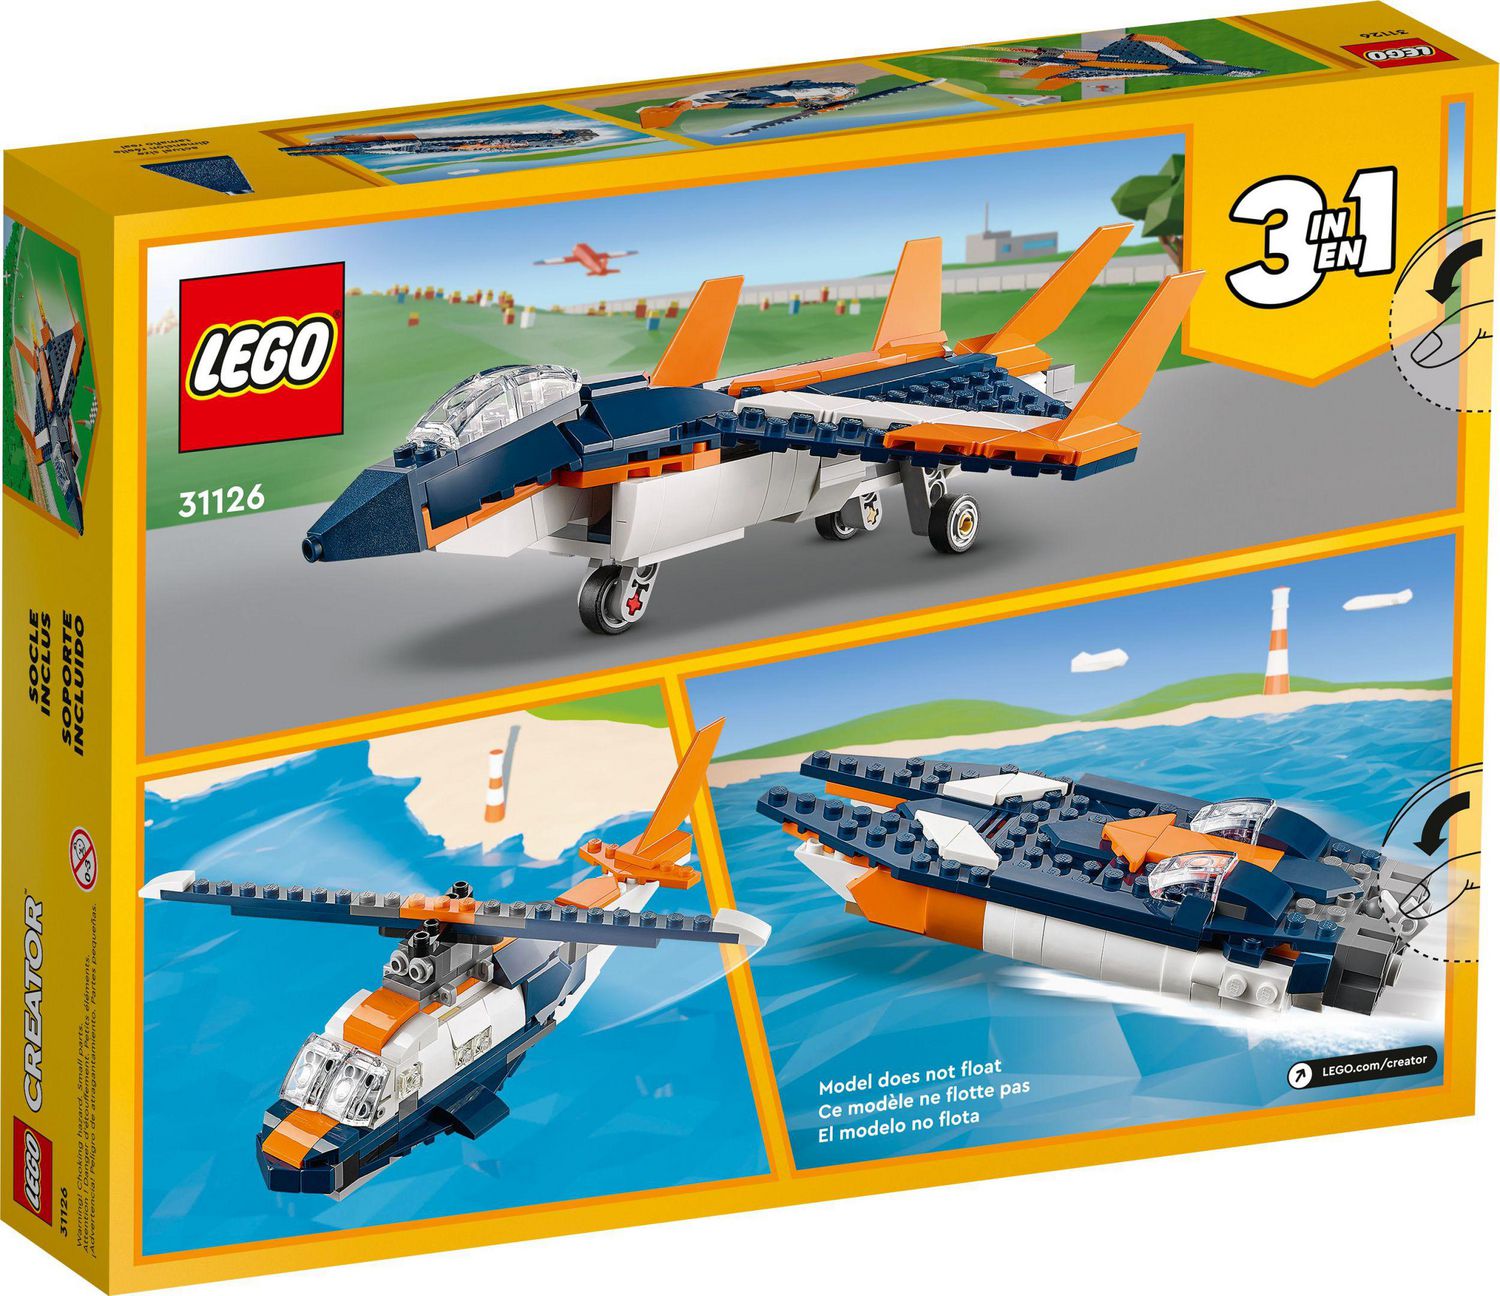 LEGO Creator, Avion à réaction, 100 pièces